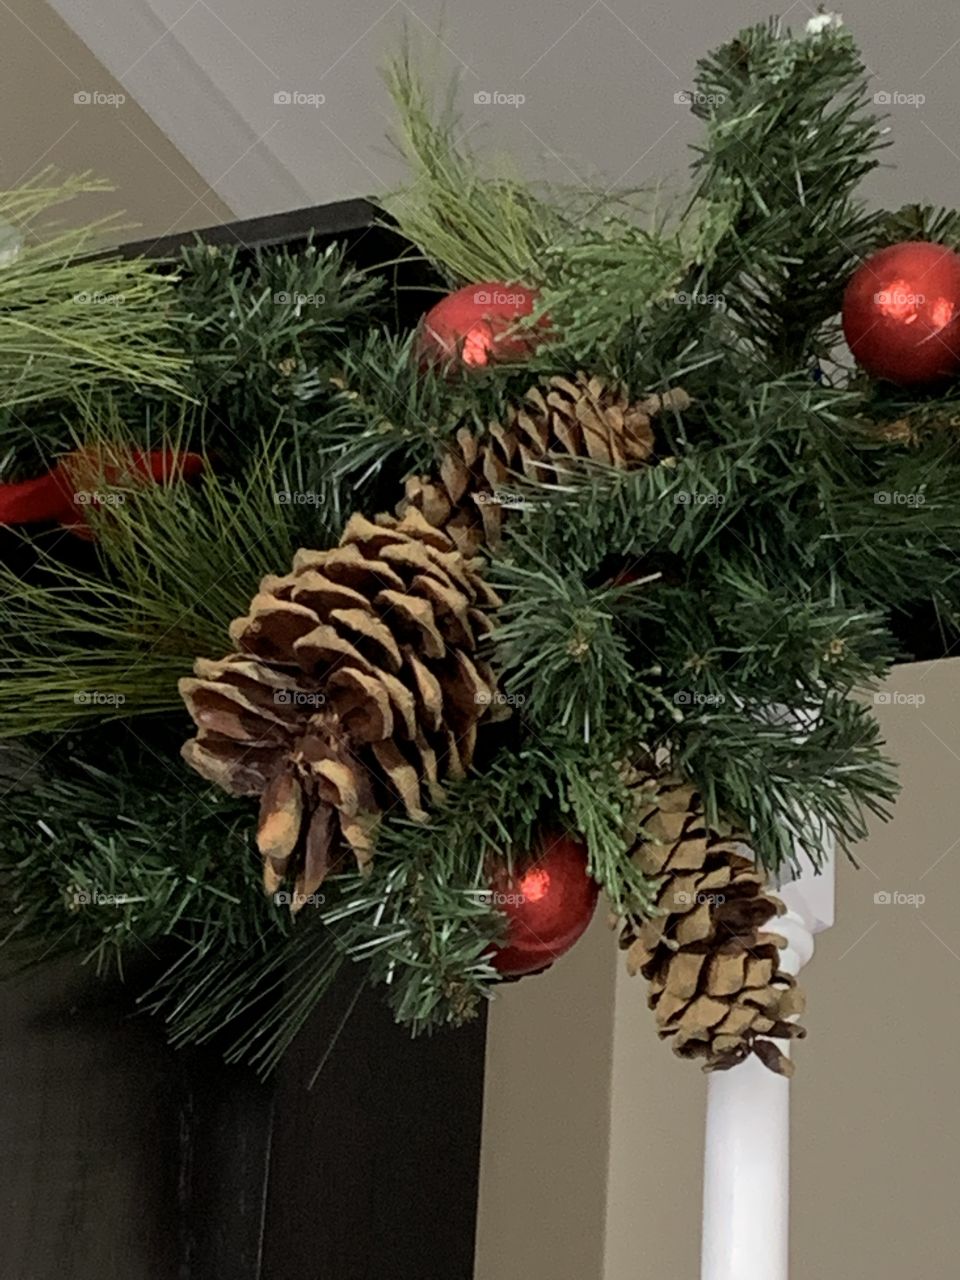 Christmas Pine comes